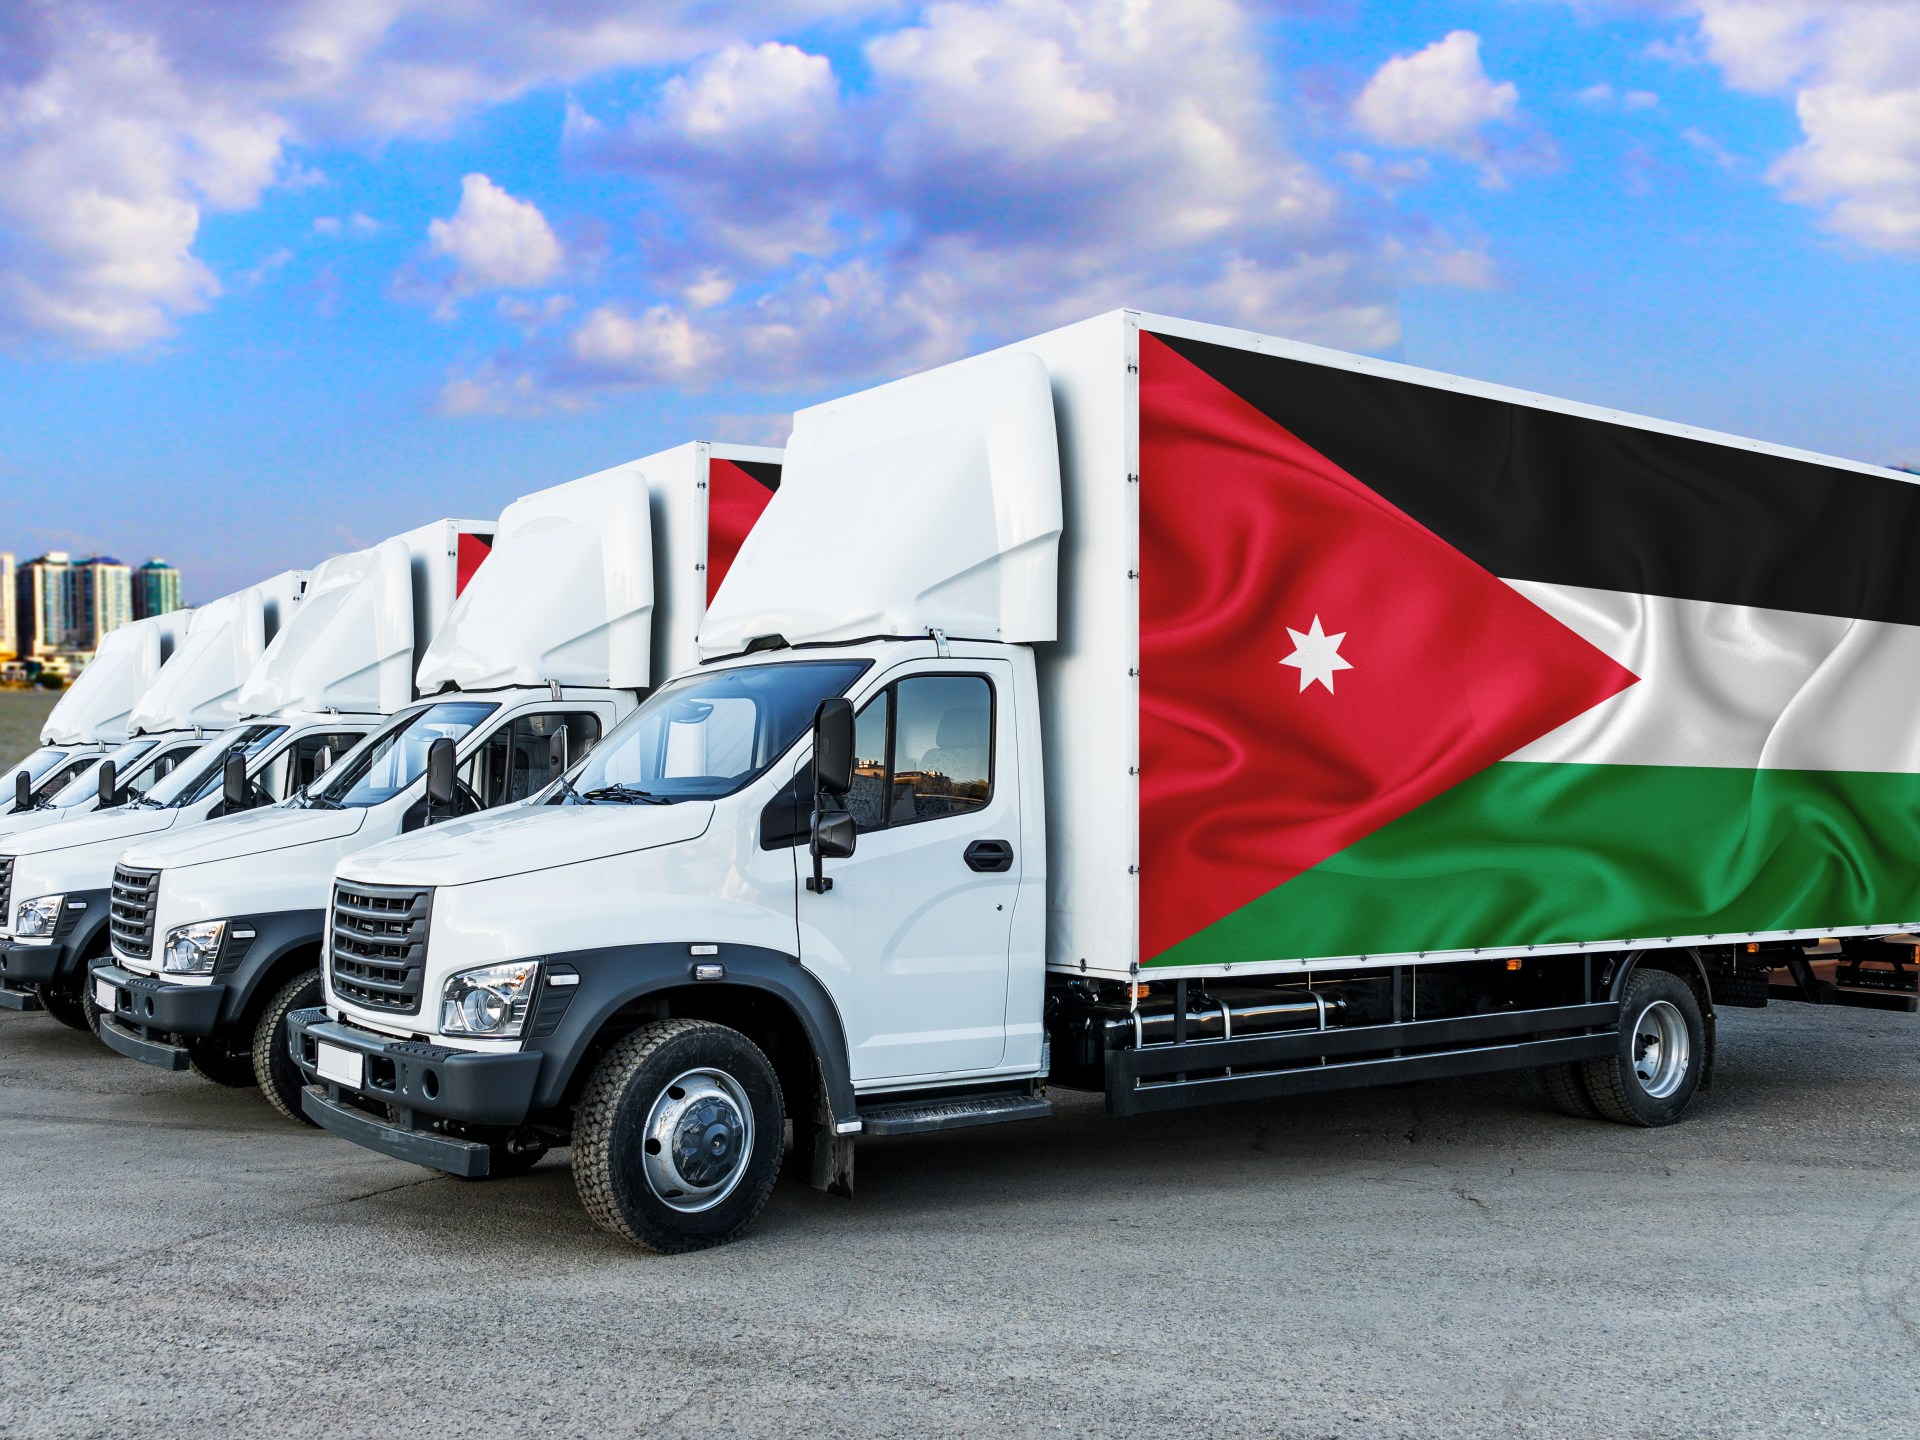 بسبب ارتفاع أسعار السولار 45%.. إضراب عام لقطاع النقل والشاحنات يعم الأردن